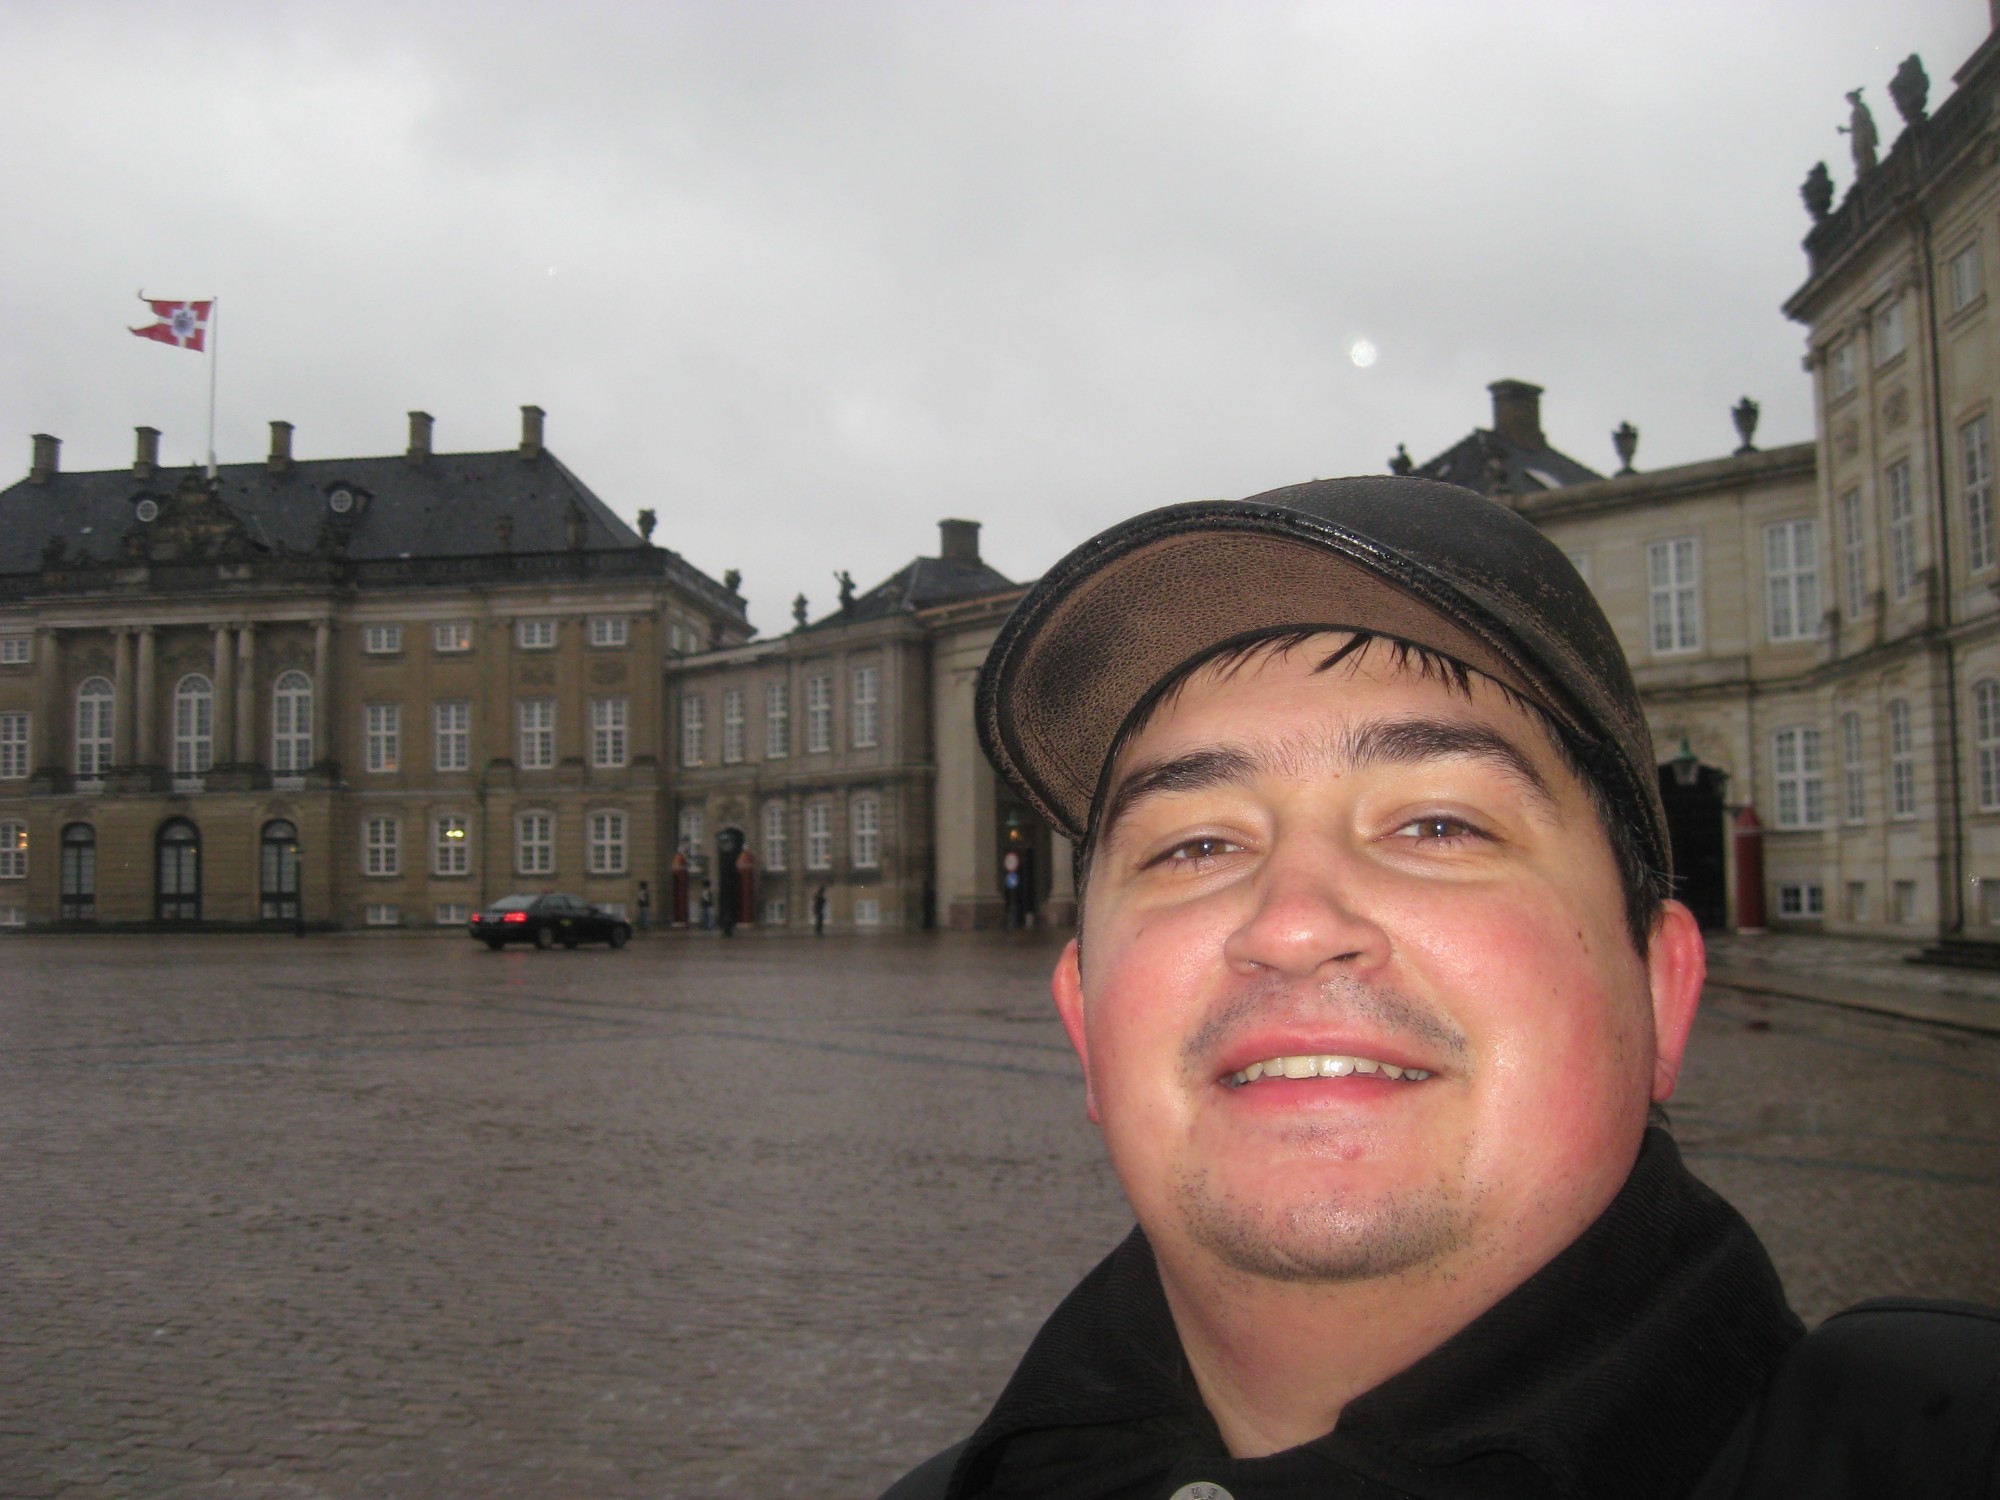 Копенгаген. Селфи на фоне Королевского Дворца. (03.01.2012)